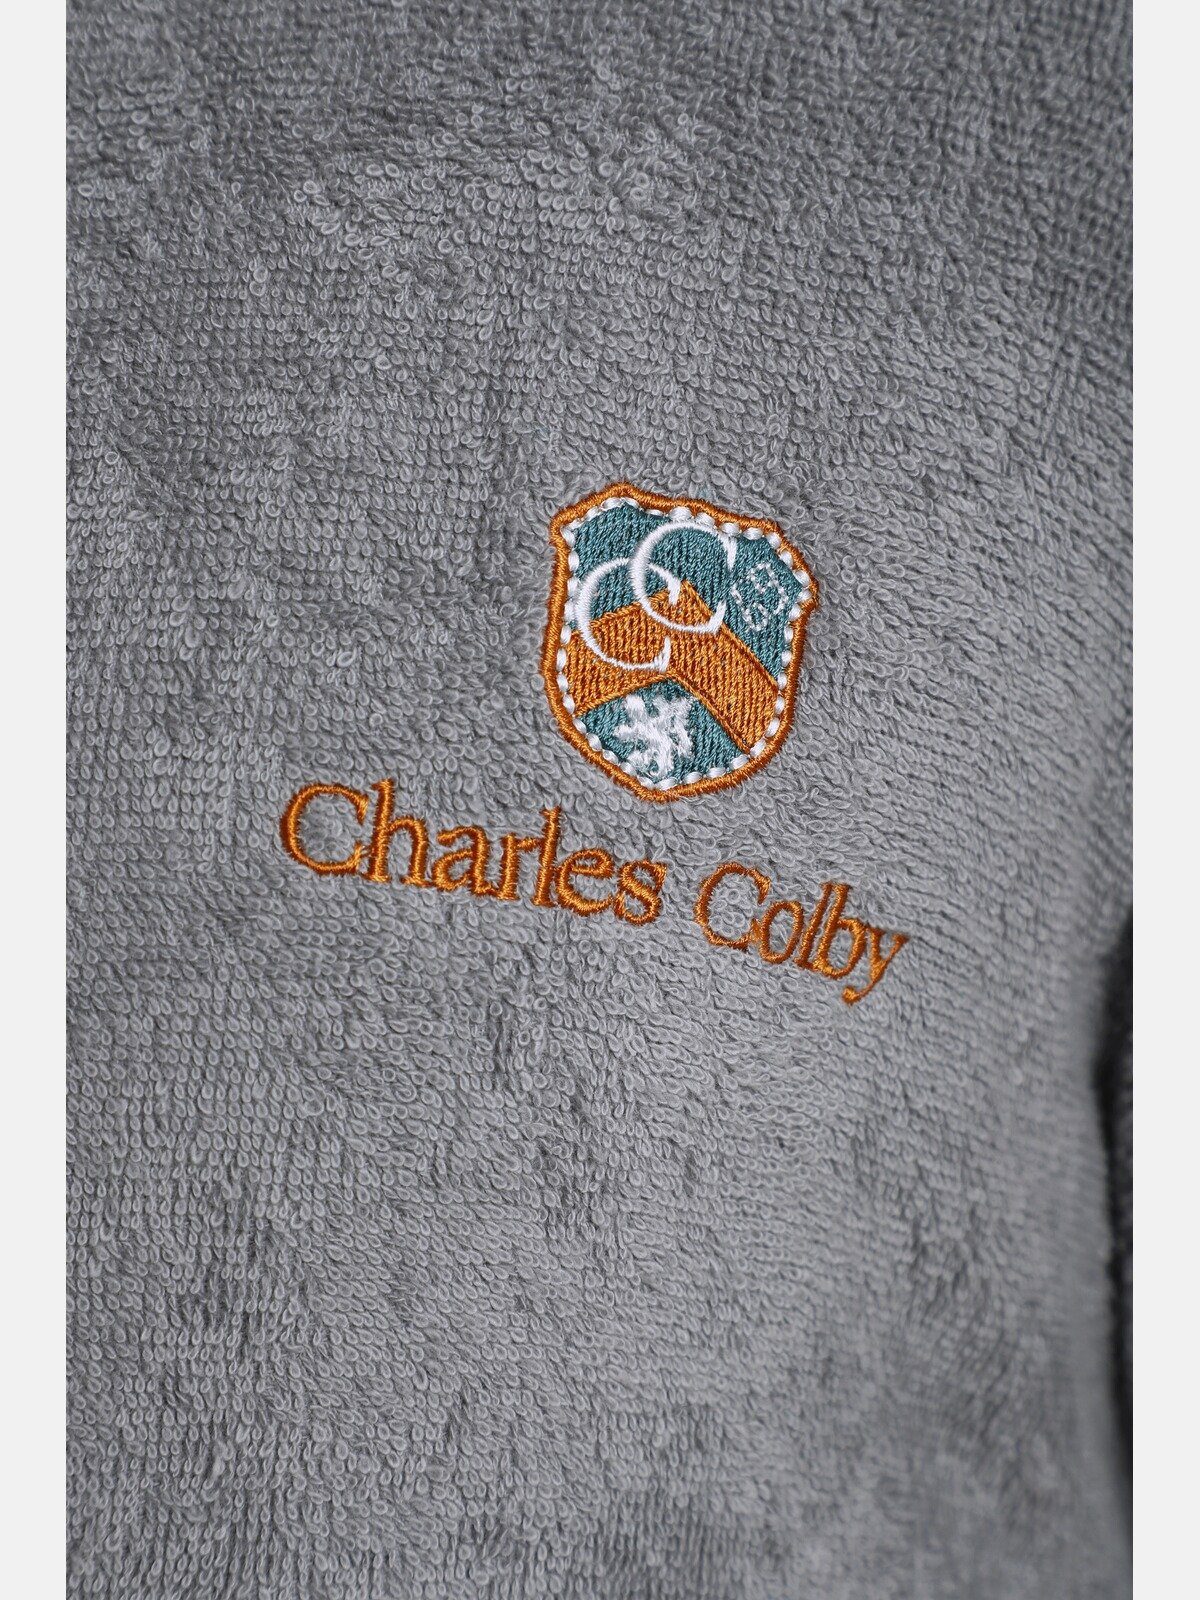 CURET, Langform, Gürtel, Baumwolle, grau weichem Kimono-Kragen, aus Colby LORD Charles Bademantel Frottier angenehm